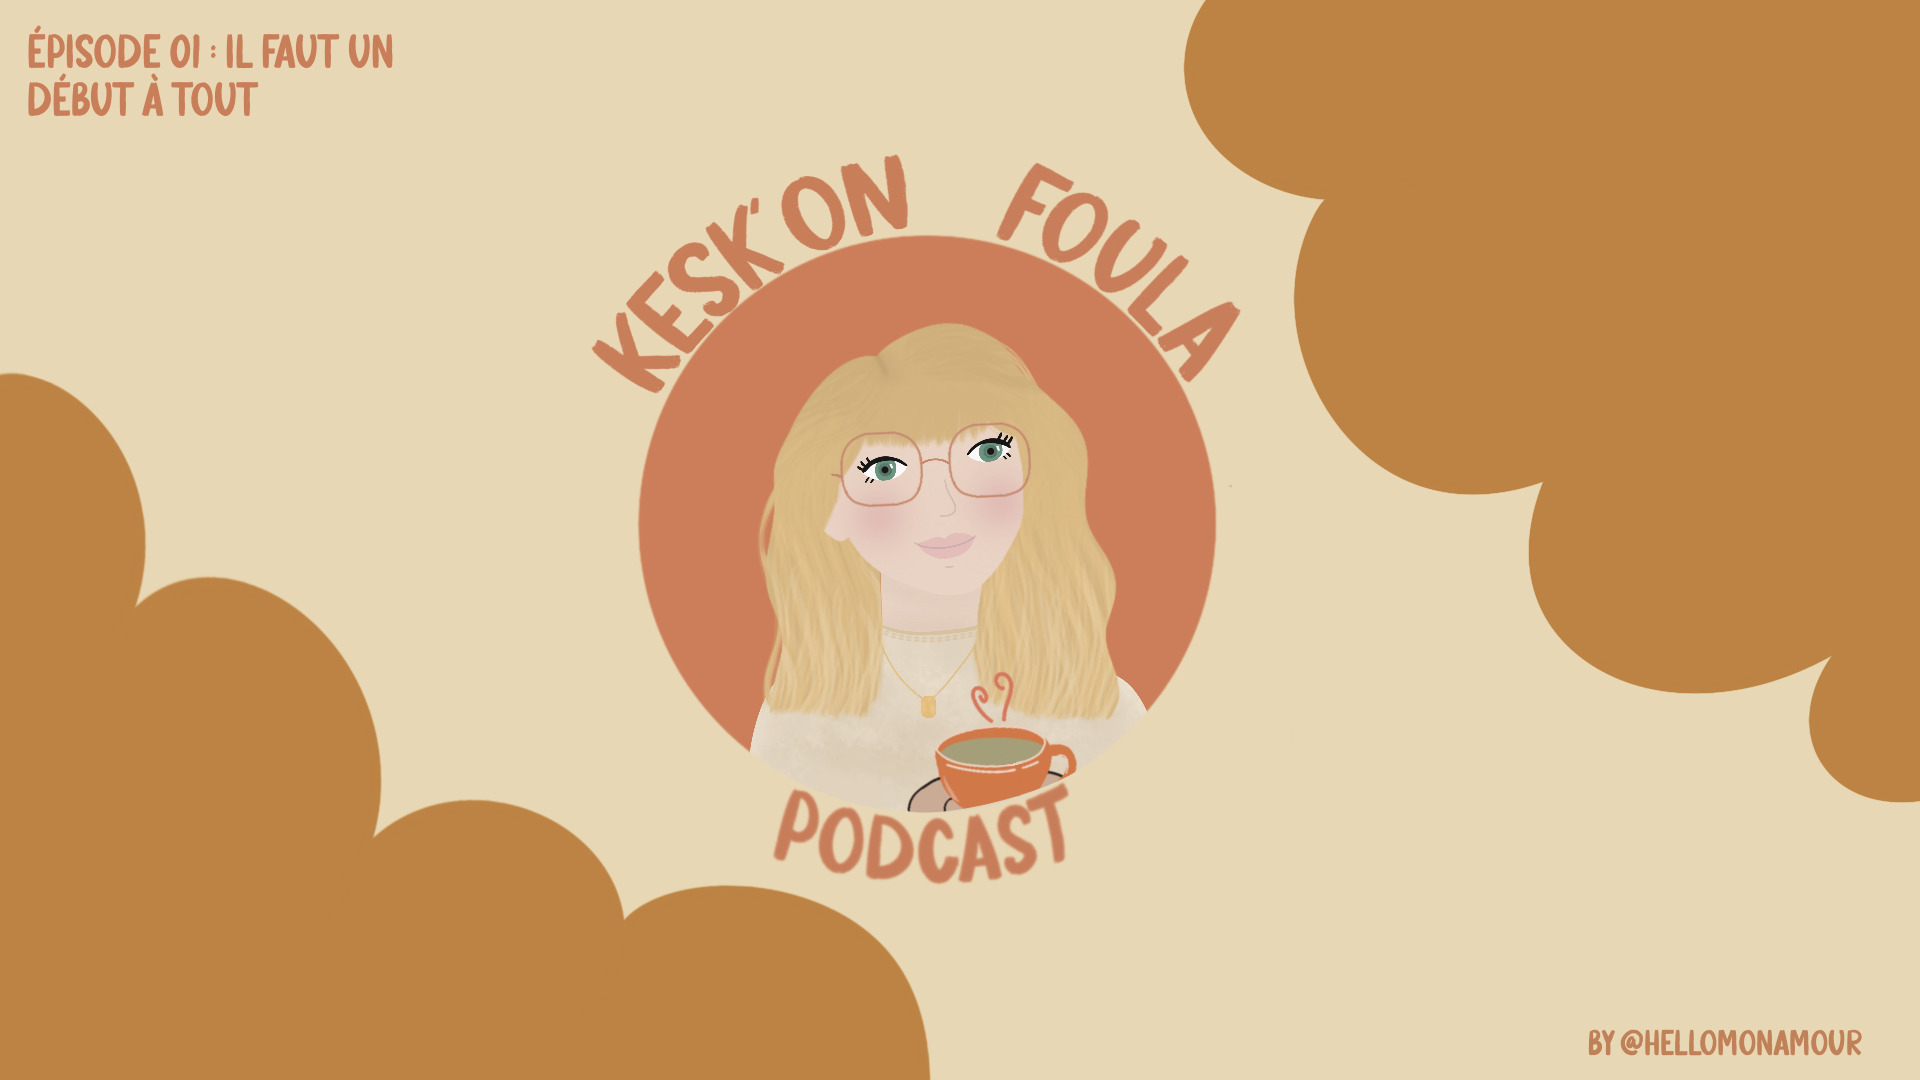 Podcast Kesk'on foula par Hello mon Amour - podcast sur la vie d'adulte, grandir, les déceptions, les épreuves, les bonheurs, les tranches de vie